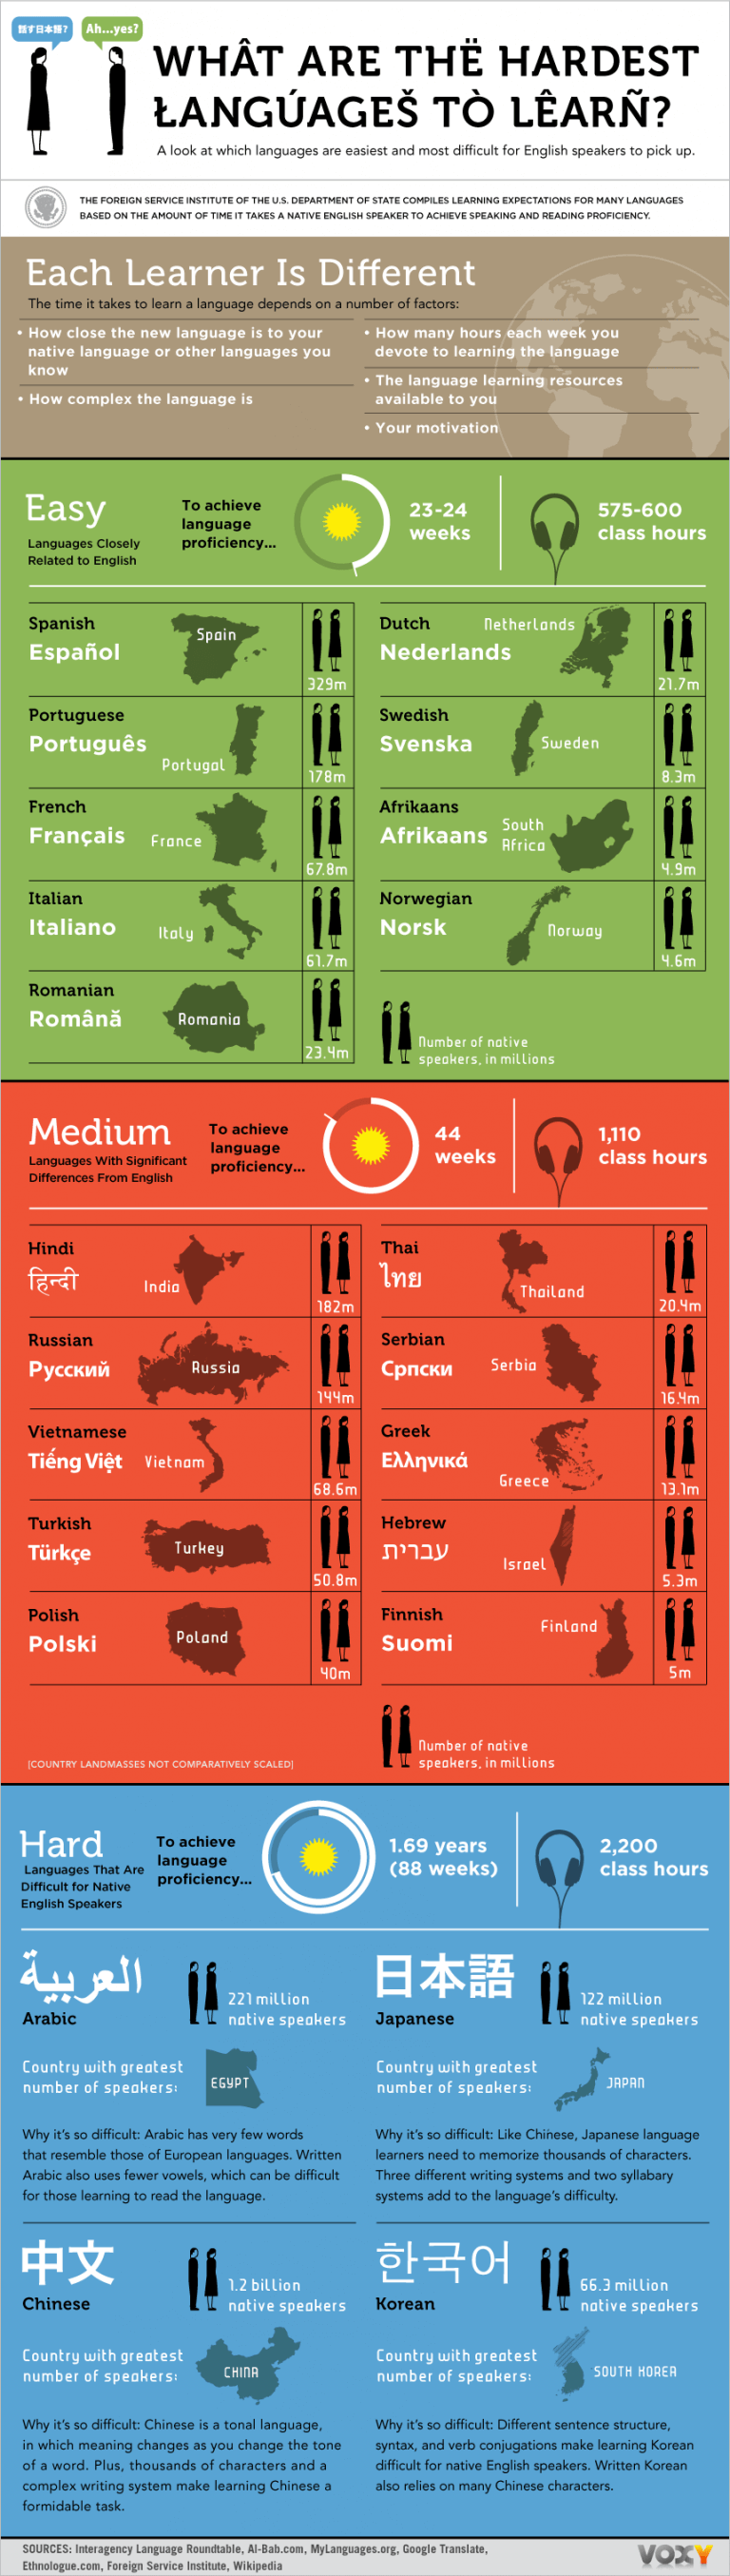 آسان ترین و سخت ترین زبان های دنیا کدامند؟